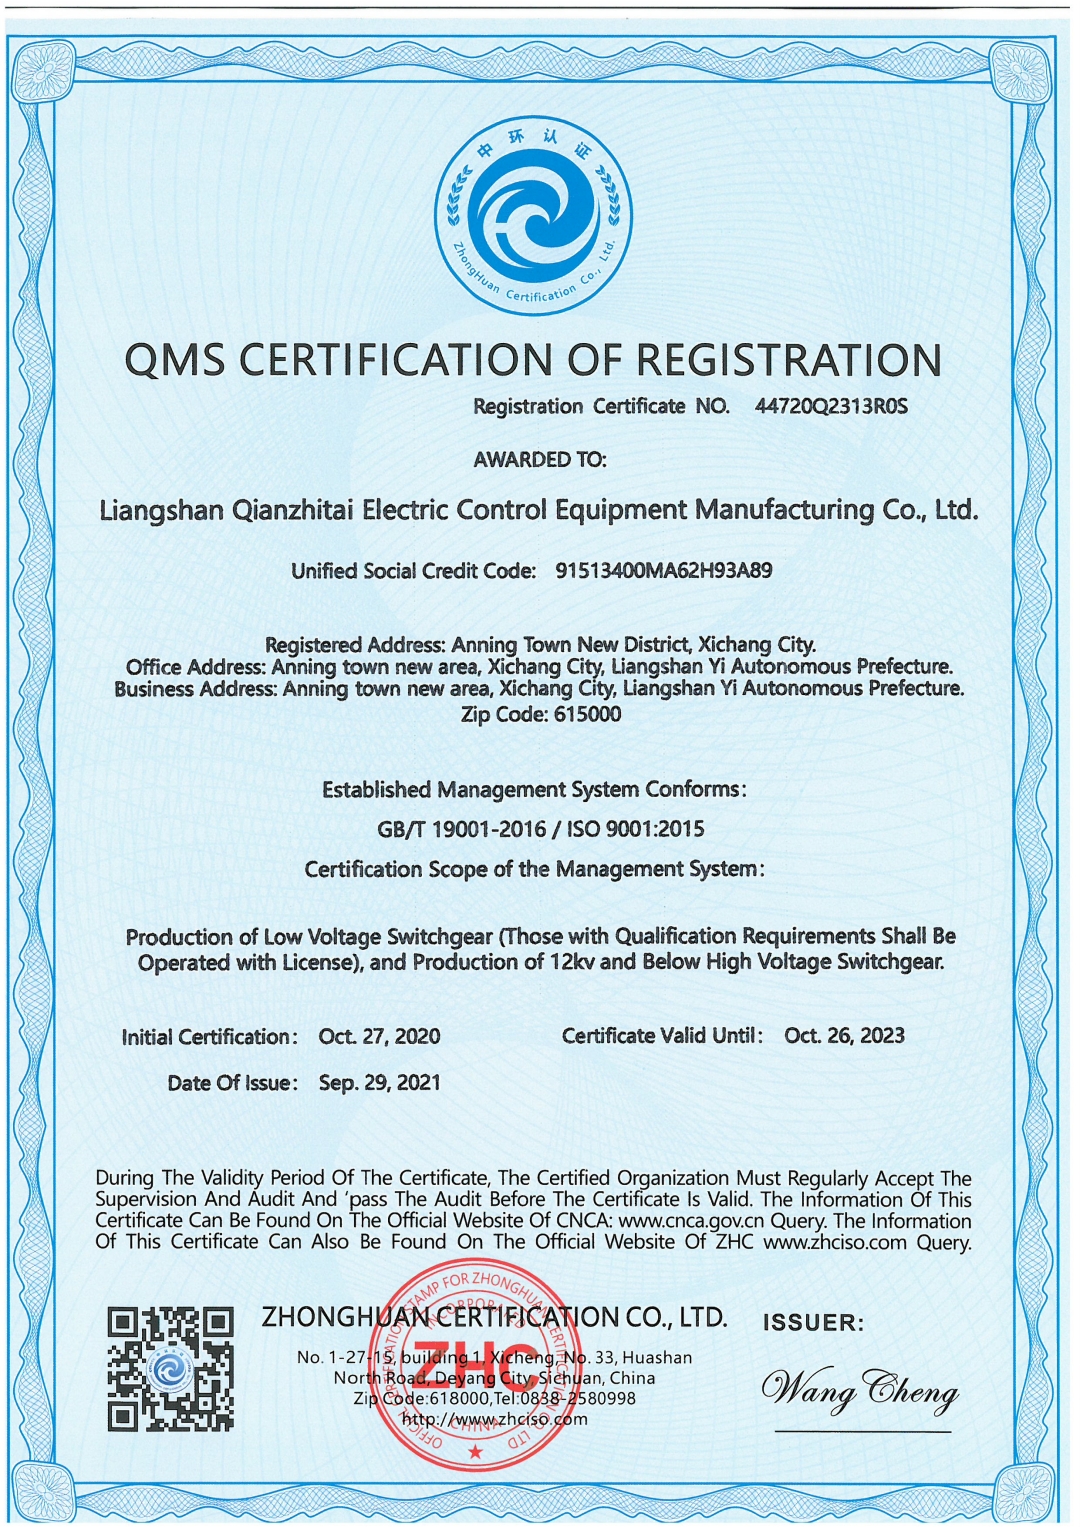 恭喜凉山州乾之泰电控设备制造有限责任公司顺利通过ISO9001.ISO45001，ISO14001认证证书